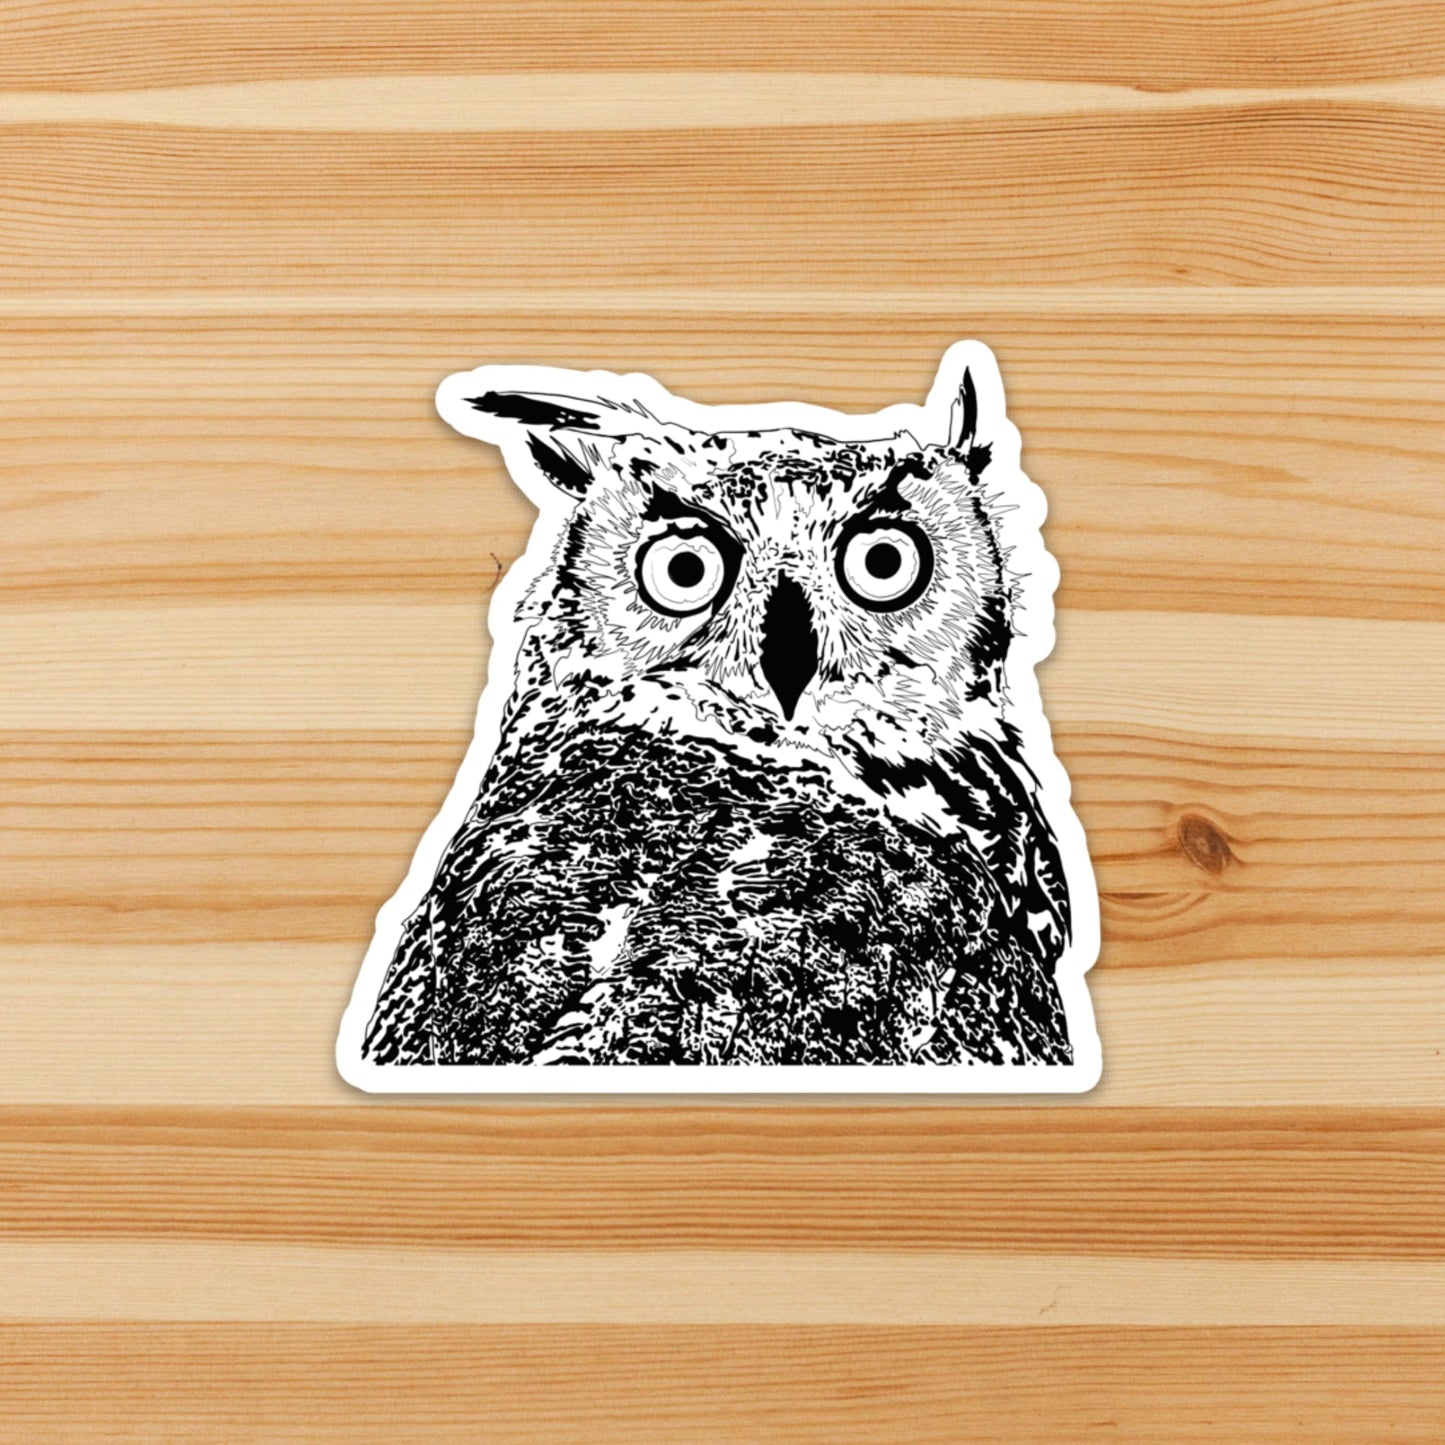 PinkPolish Design Stickers "Stunned Owl" Die Cut Vinyl Sticker